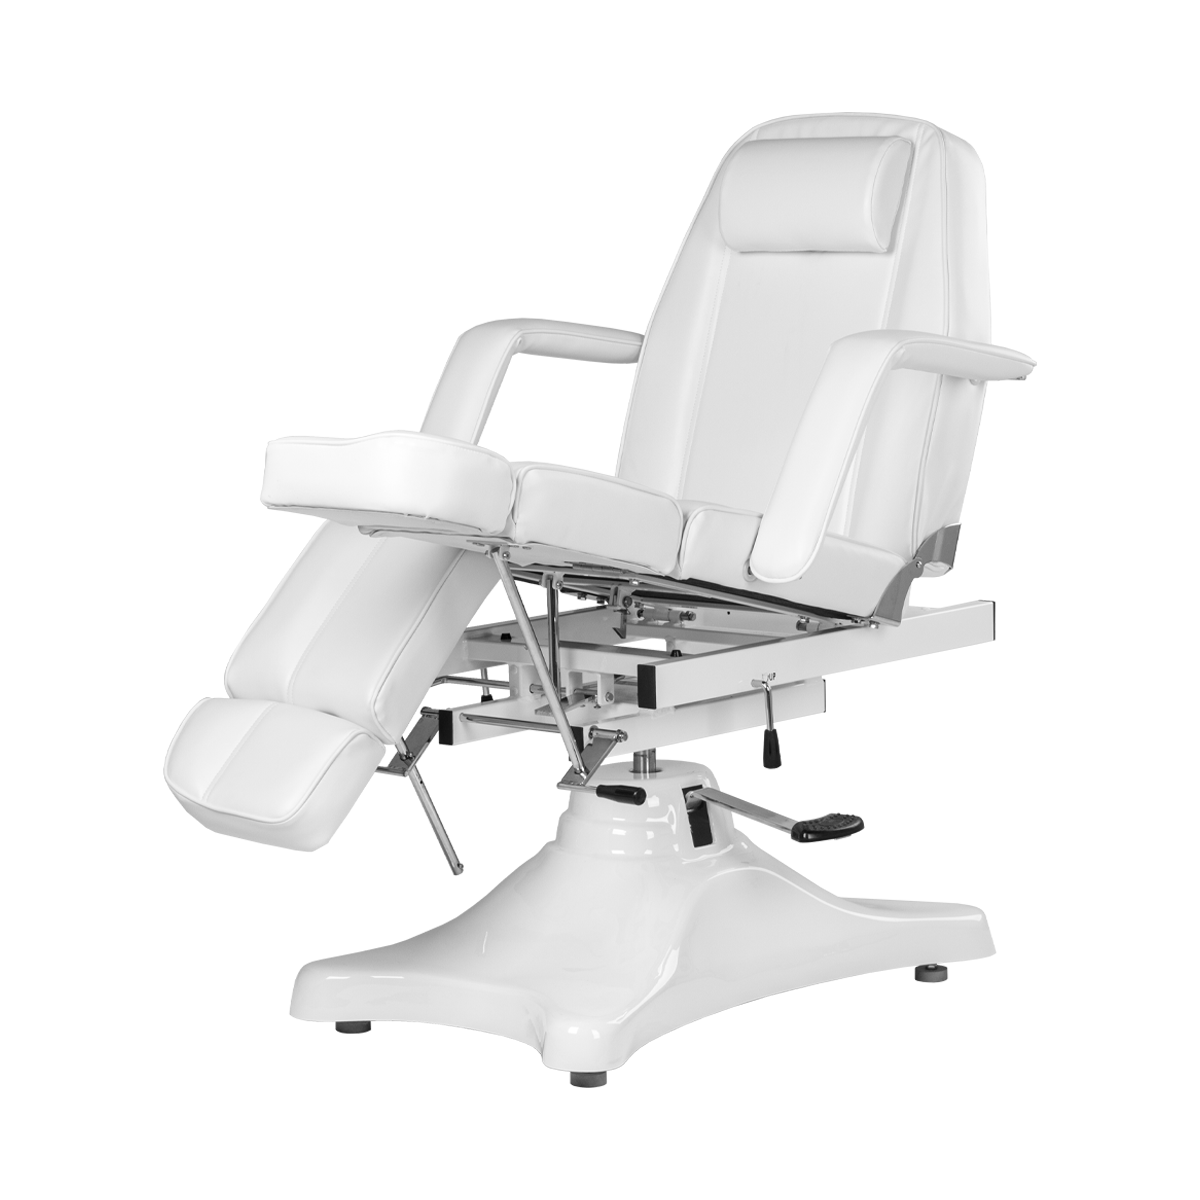 Педикюрное кресло МД-823А, гидравлика - 4 